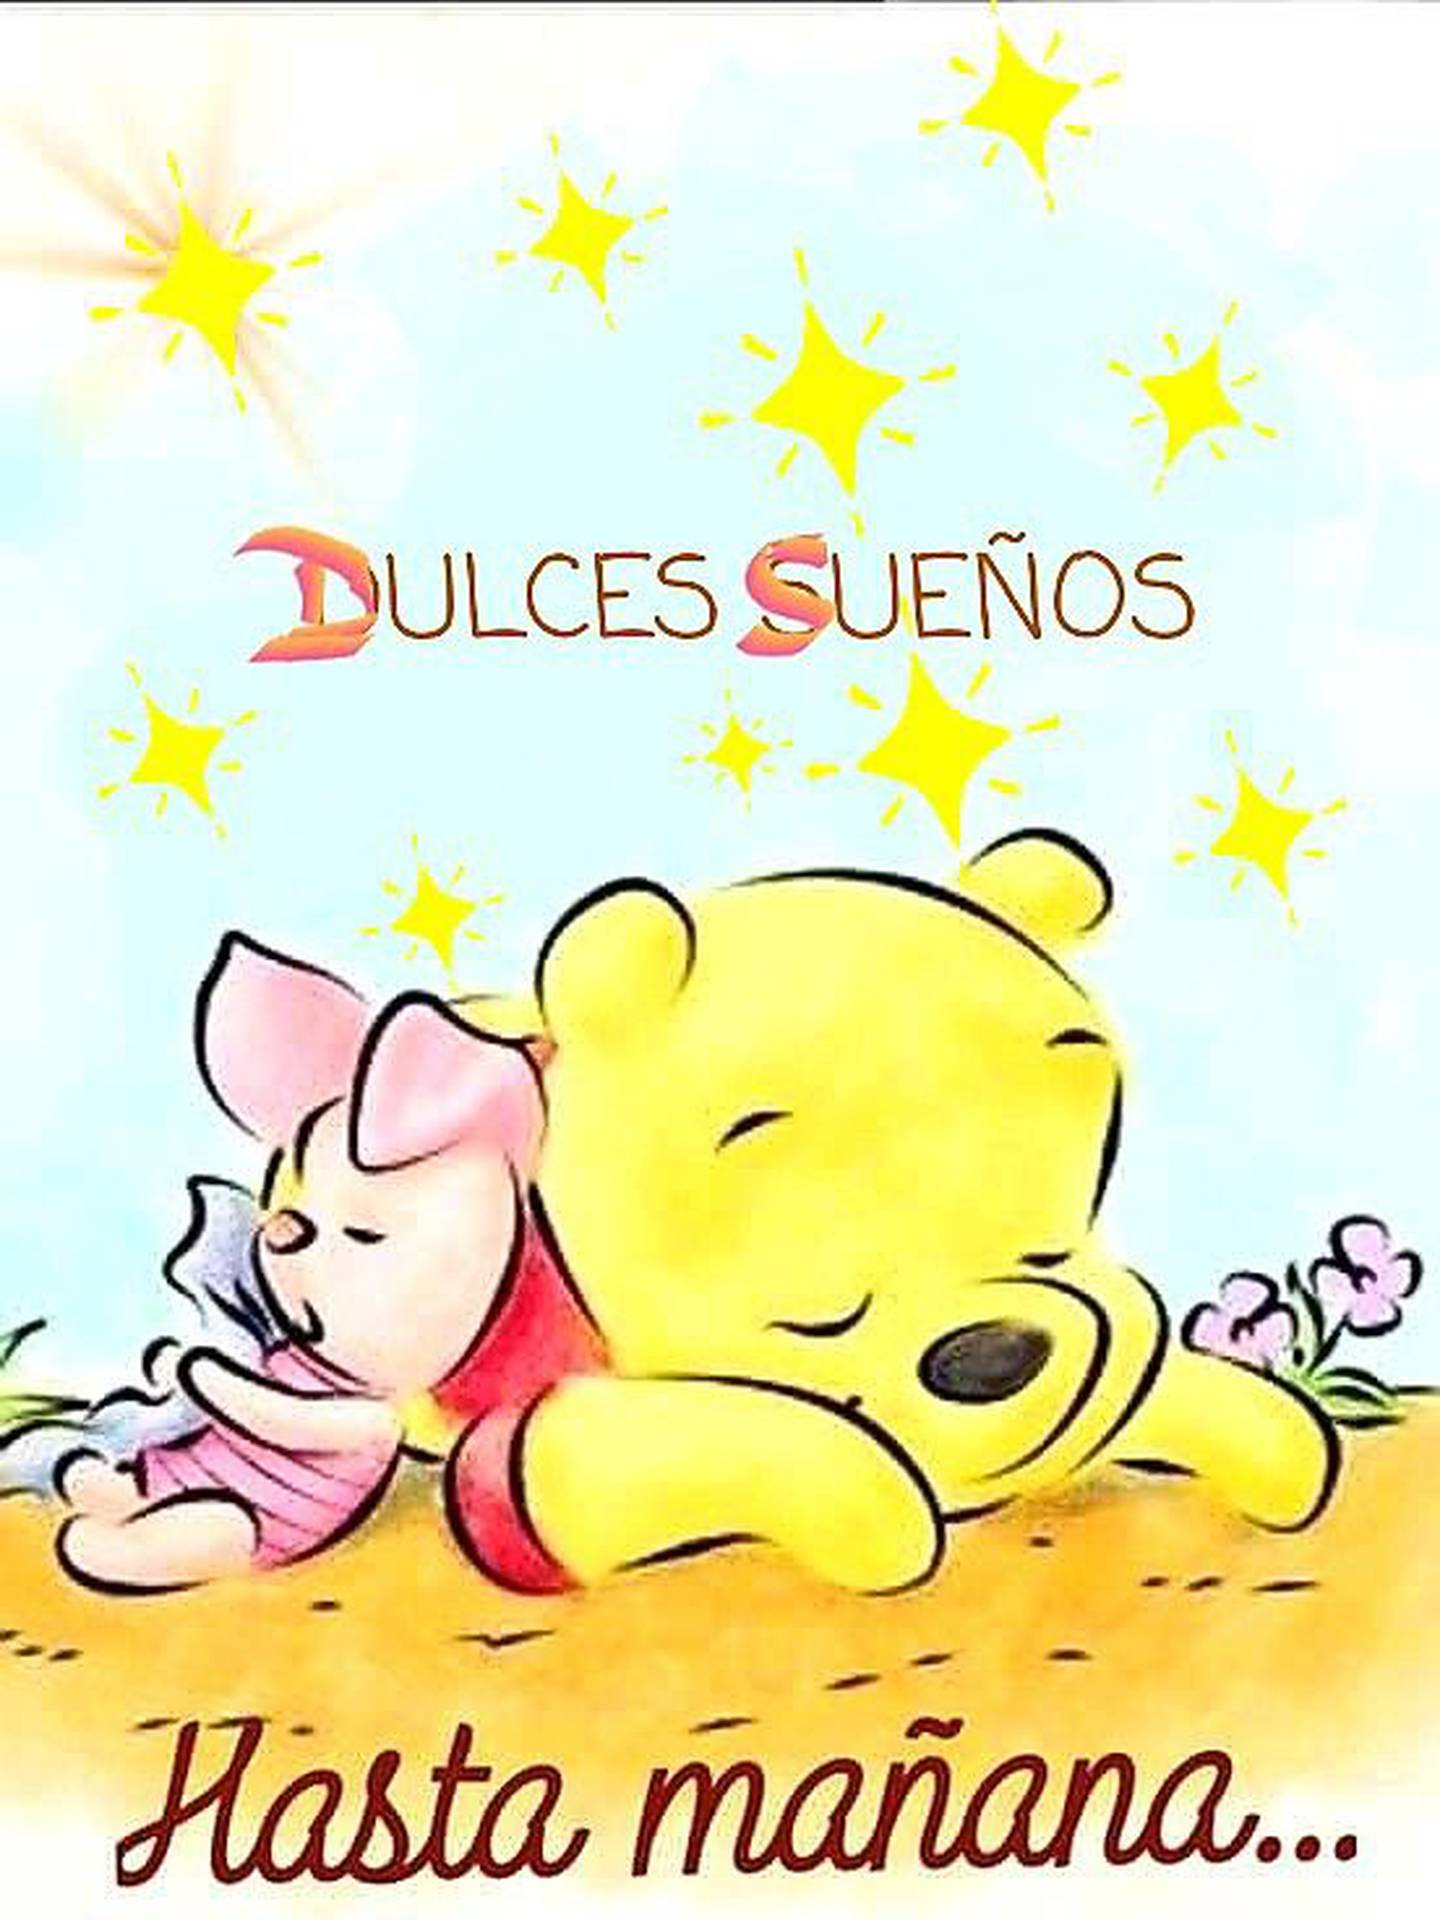 Piglet y Winnie the Pooh durmiendo y una frase que dice "Dulces sueños, hasta mañana".